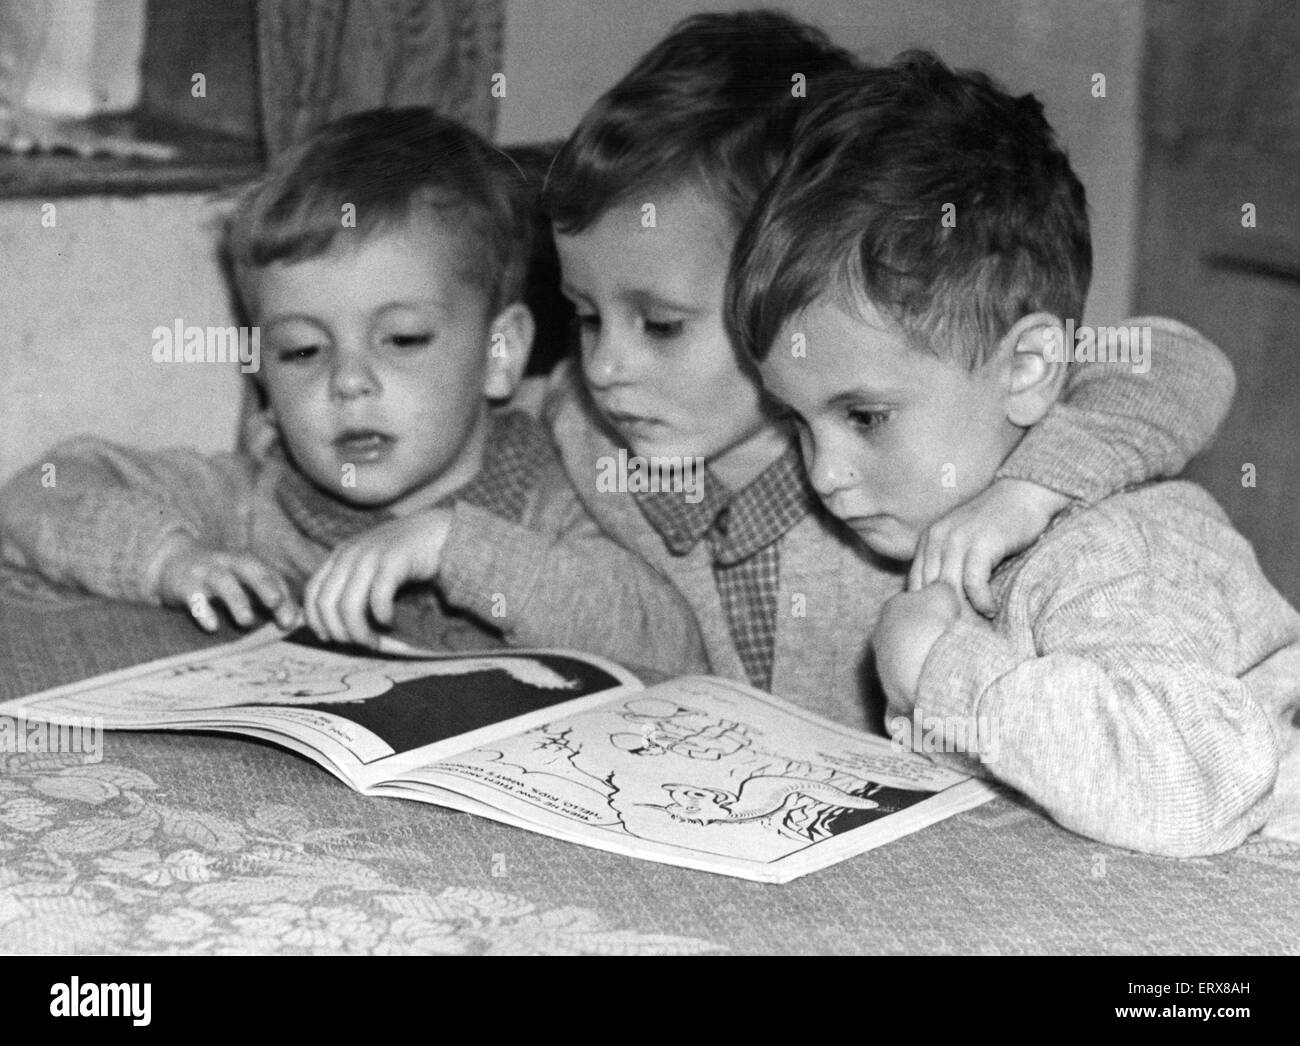 Derek, David & Donald Haden, im Alter von 3 Jahren 6 Monaten, bekannt als die Gornal Wood-Drillinge, die drei Jungs waren am 24. November 1943, Mary und Wilfred Haden zuhause die Rosemary Ednam Mutterschaft, Dudley geboren. Im Bild zu Hause lesen, 4. Mai 1947. Stockfoto